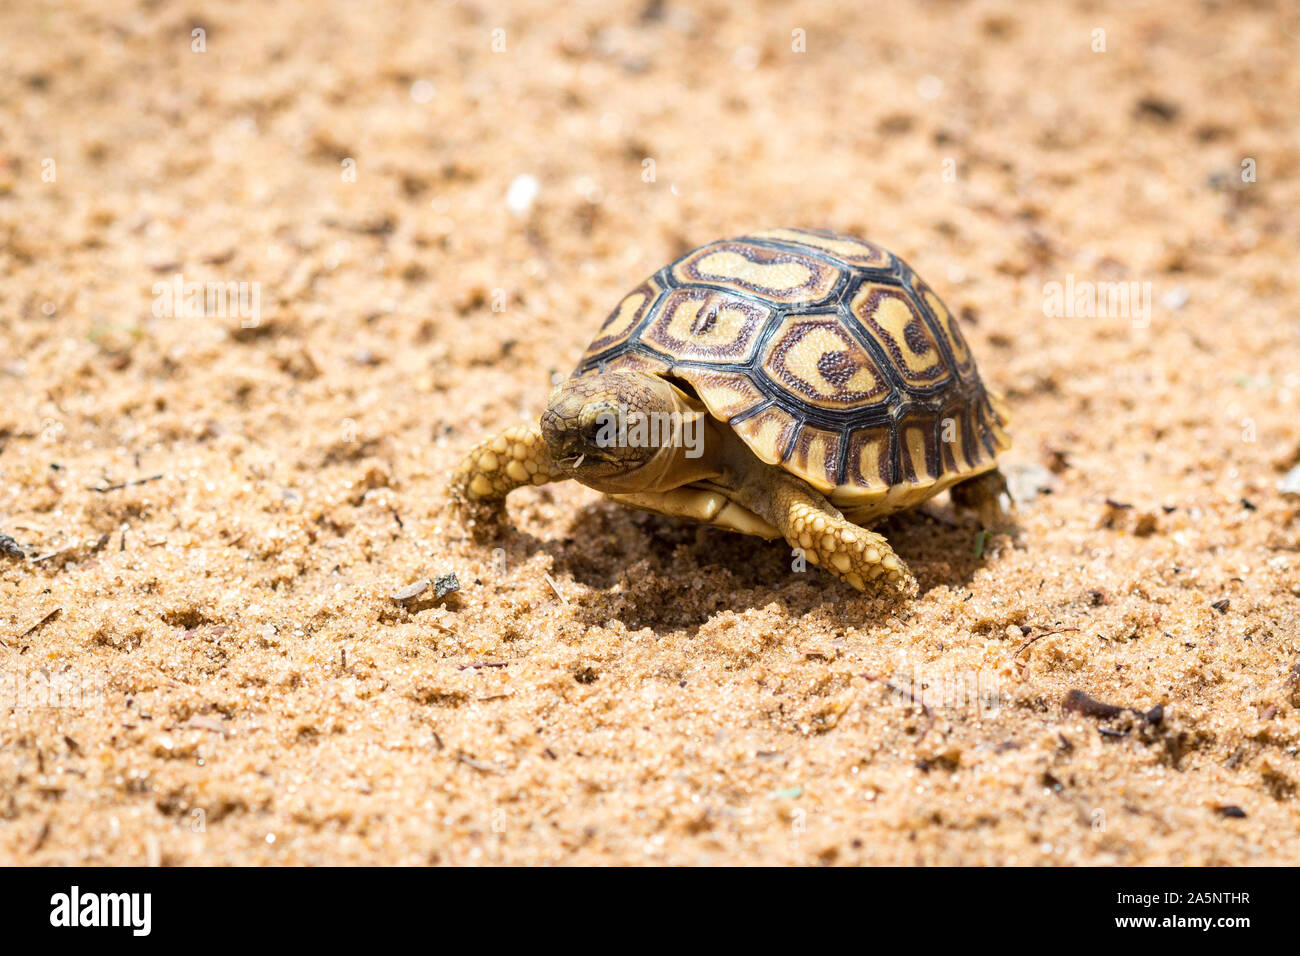 Les jeunes et peu de marche tortue à travers un terrain sablonneux, Namibie, Afrique Banque D'Images